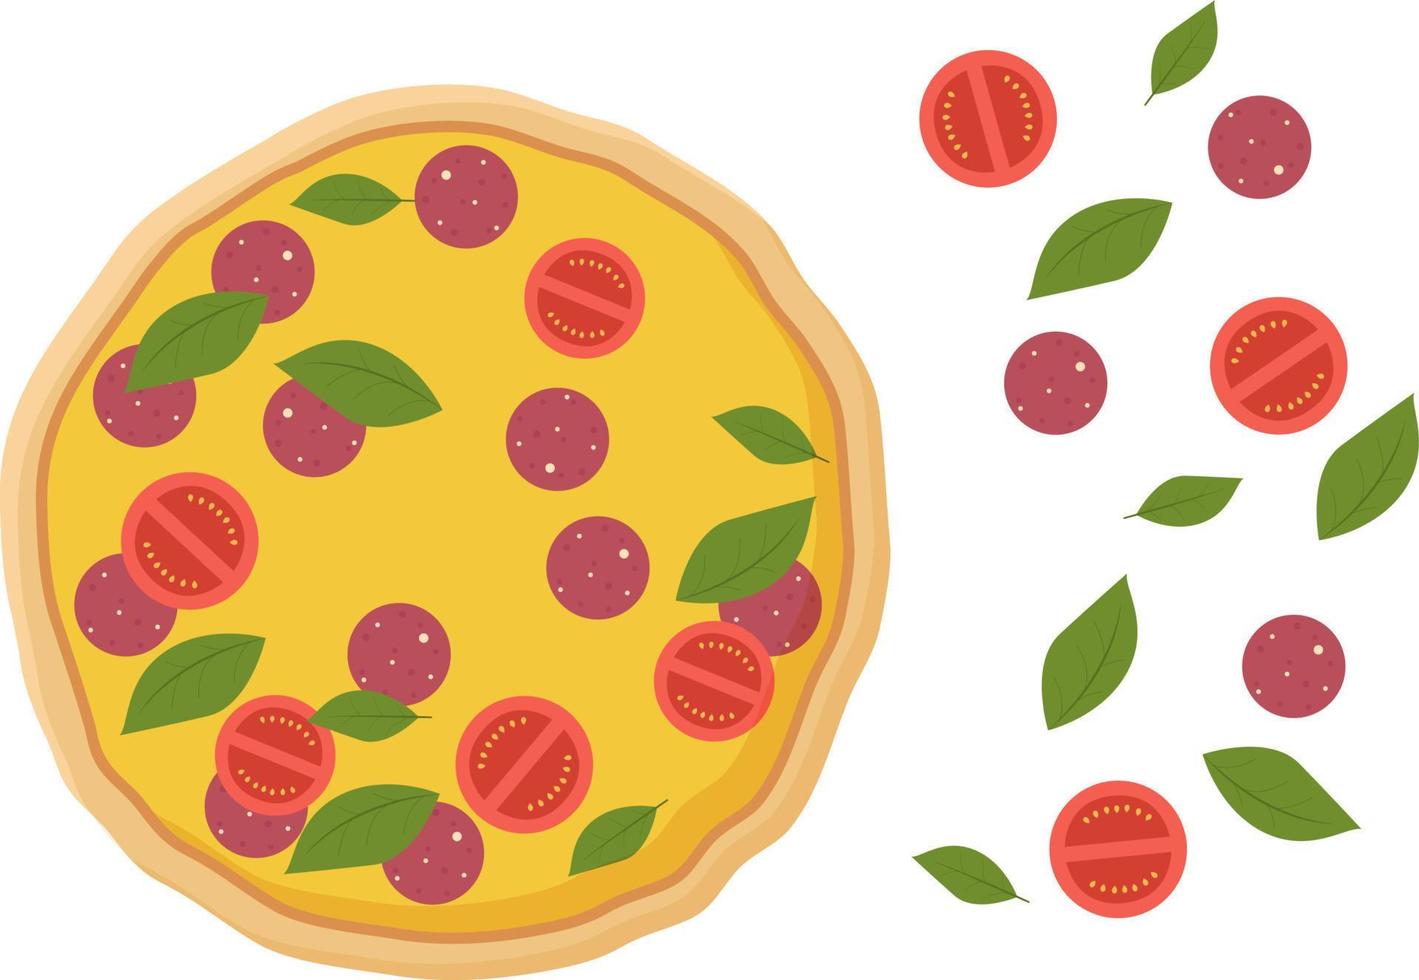 frisch zubereitete Pizza und Zutaten. peperoni mit gelbem käse mit wurst und scheiben roten tomaten. vektor